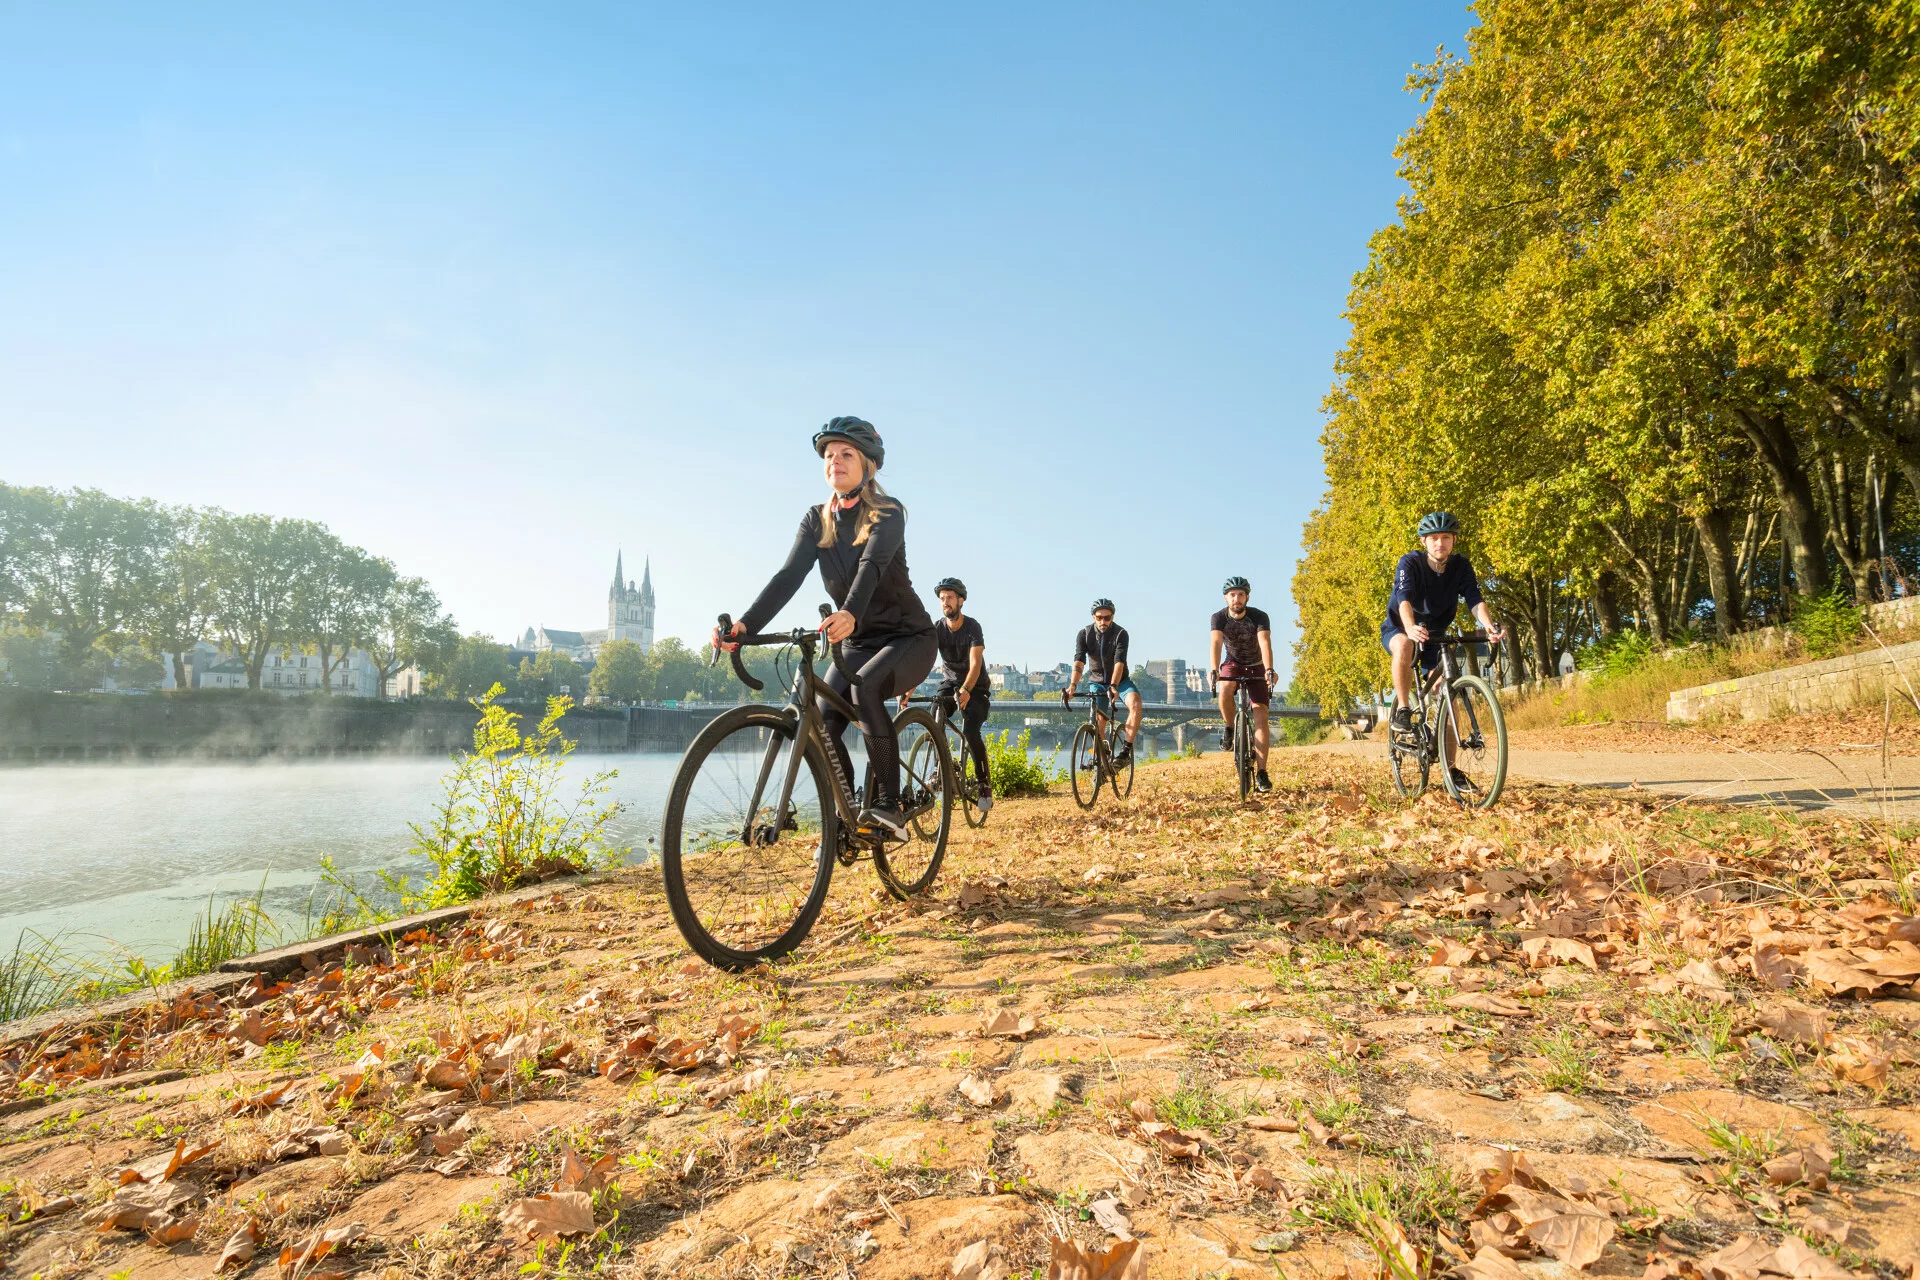 Maison Bout du monde Angers accueille les cyclistes propose des services vélo. Photo Christophe Martin - Anjou Tourisme